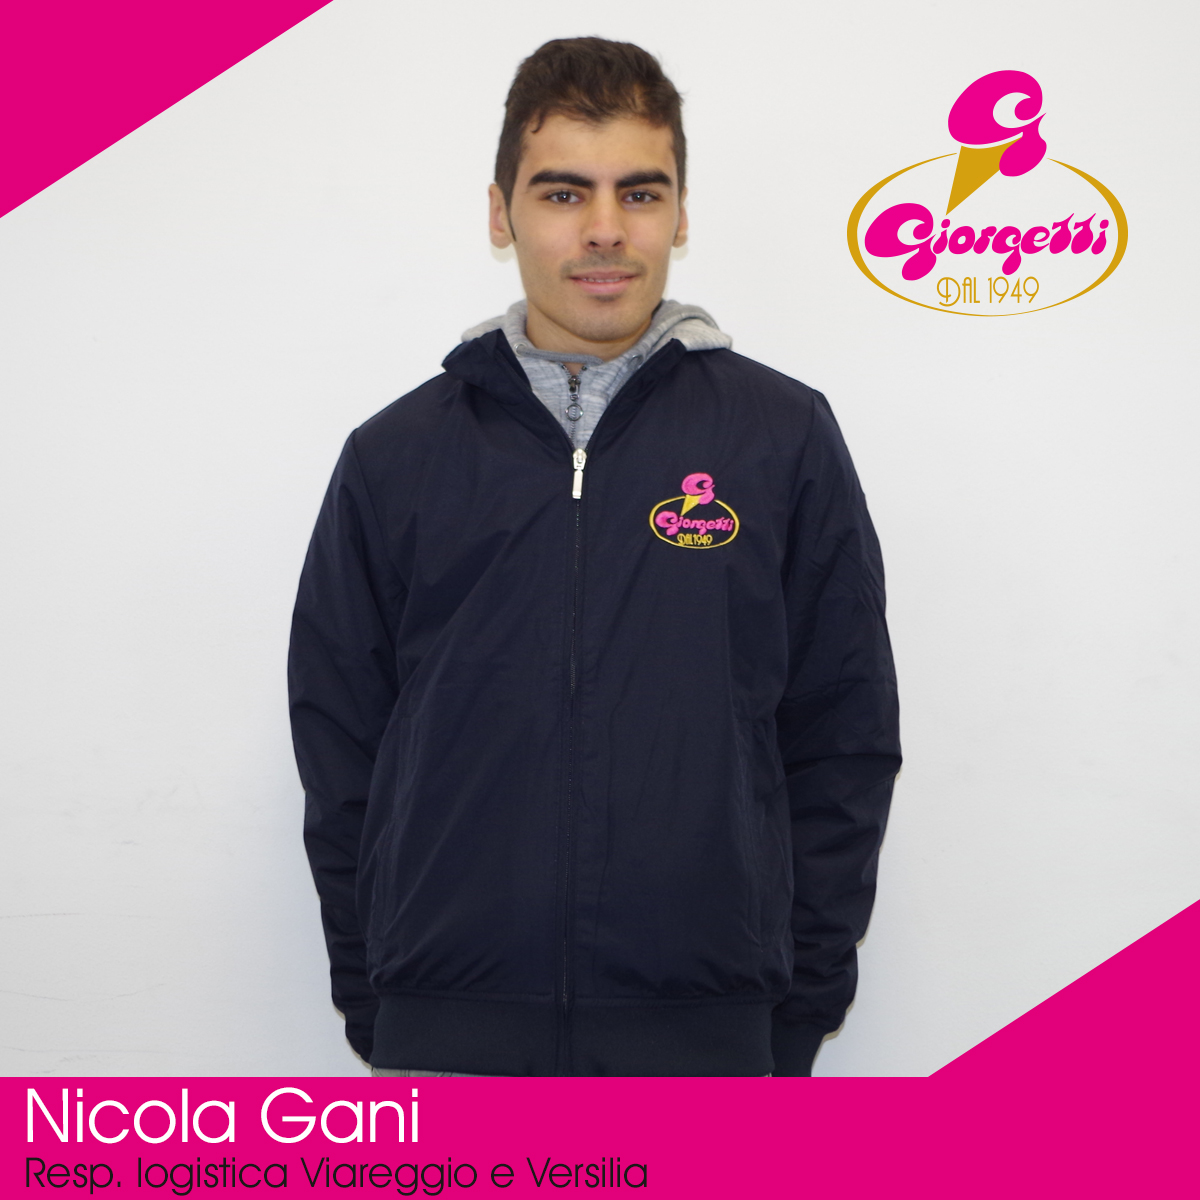 Nicola Gani